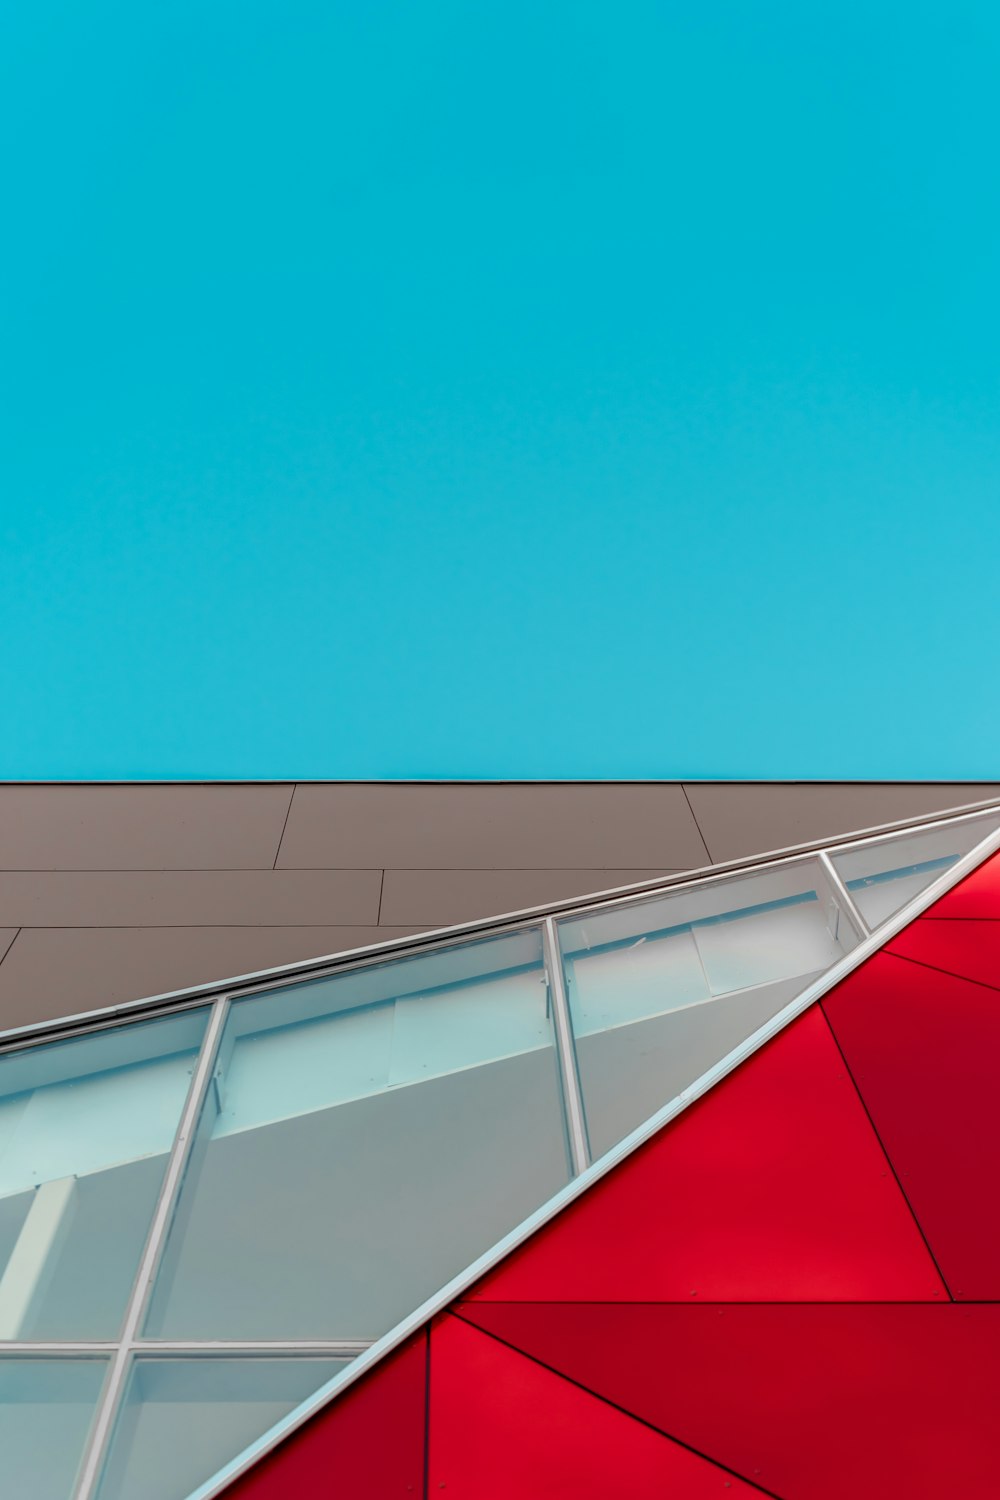 Fotografía de enfoque superficial de un edificio de pared de panel de vidrio rojo, marrón y blanco bajo el cielo azul